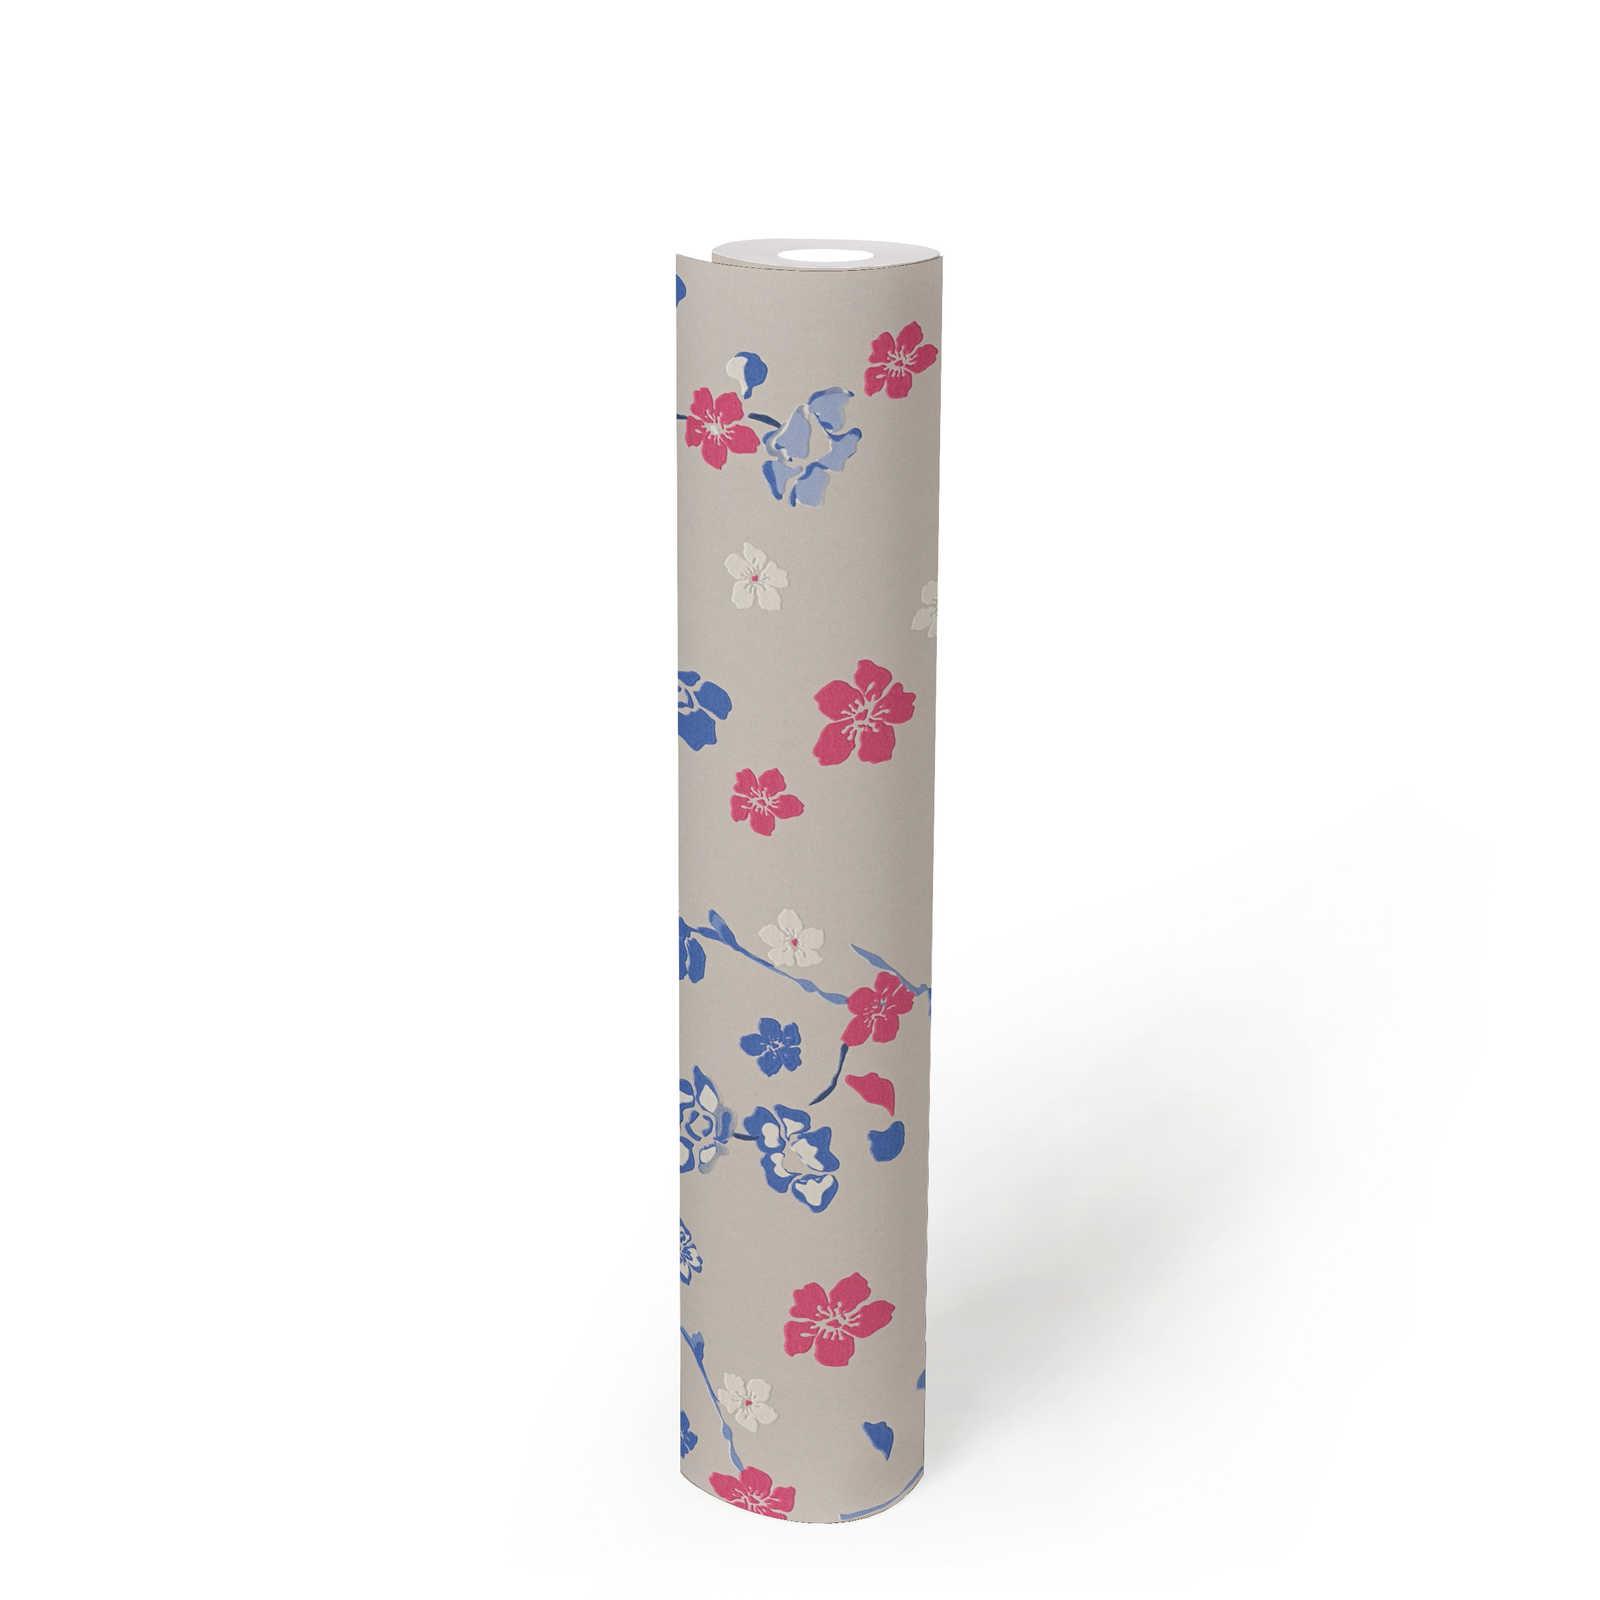             Vliesbehang met speels bloemenpatroon - lichtgrijs, blauw, roze
        